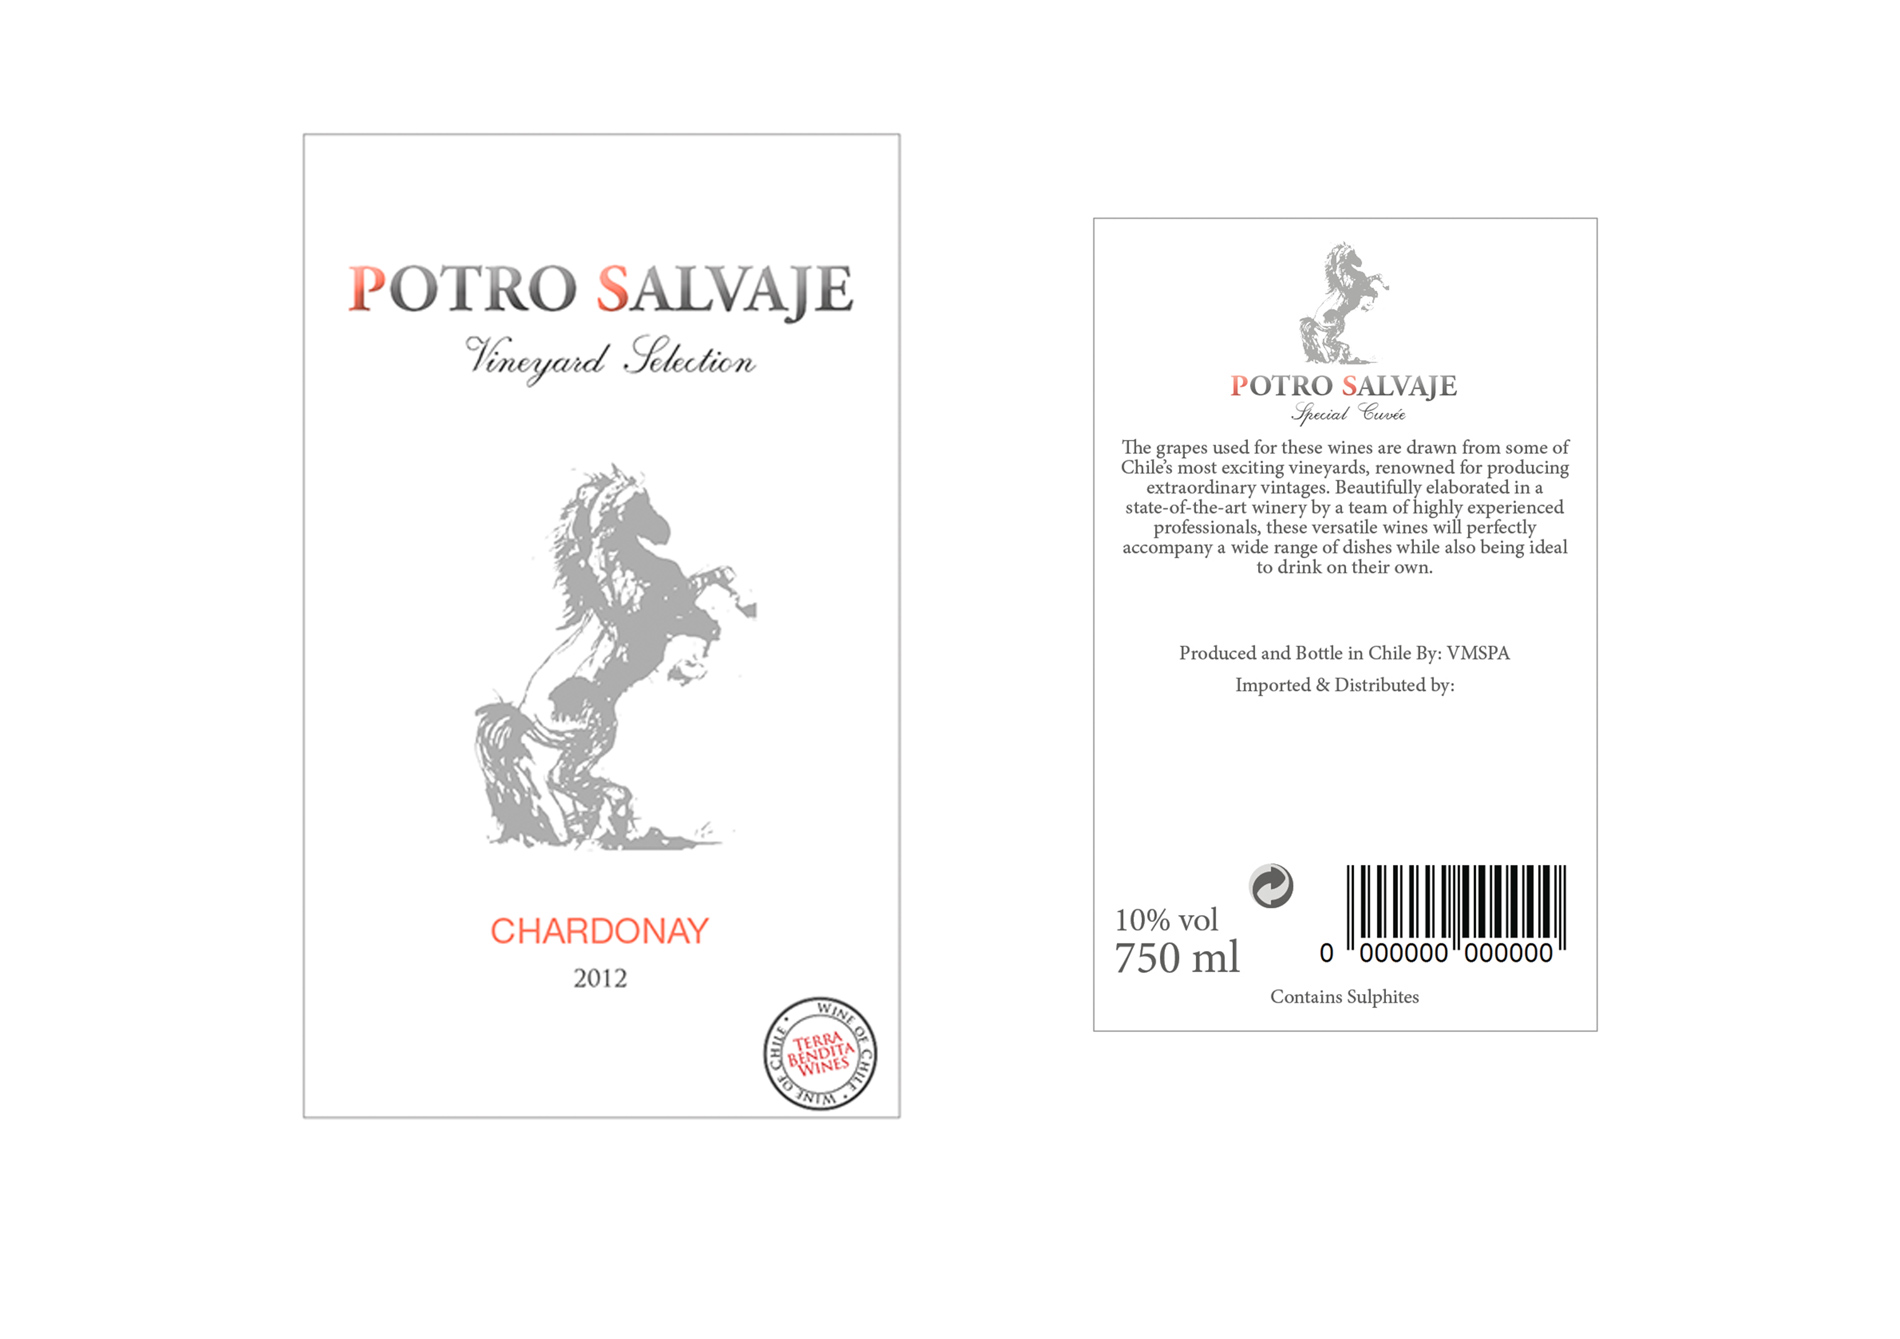 Diseño gráfico y creativo de etiquetas y packaging de vino para POTRO SALVAJE en Chile